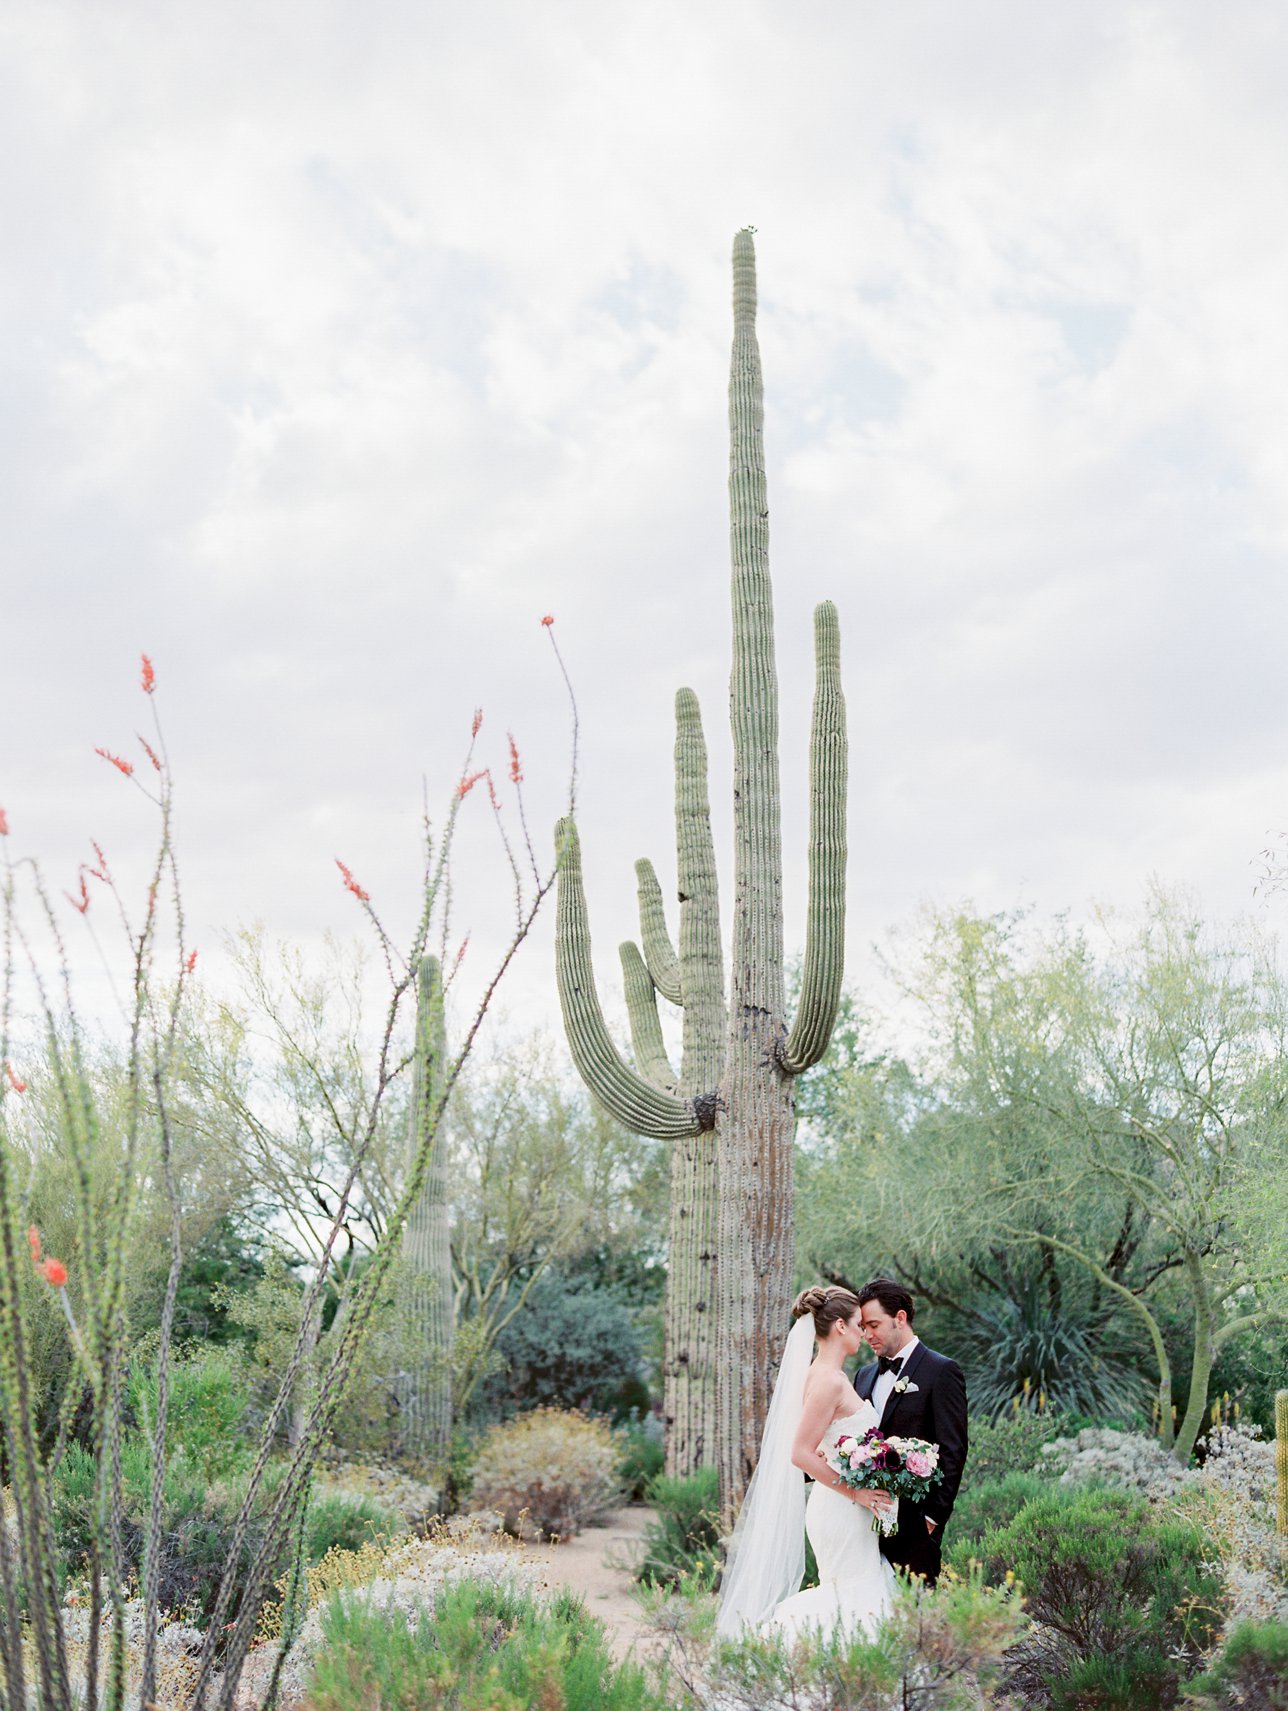 Four Seasons Scottsdale wedding photos - Scottsdale Wedding Photographer | Rachel Solomon Photography_8815